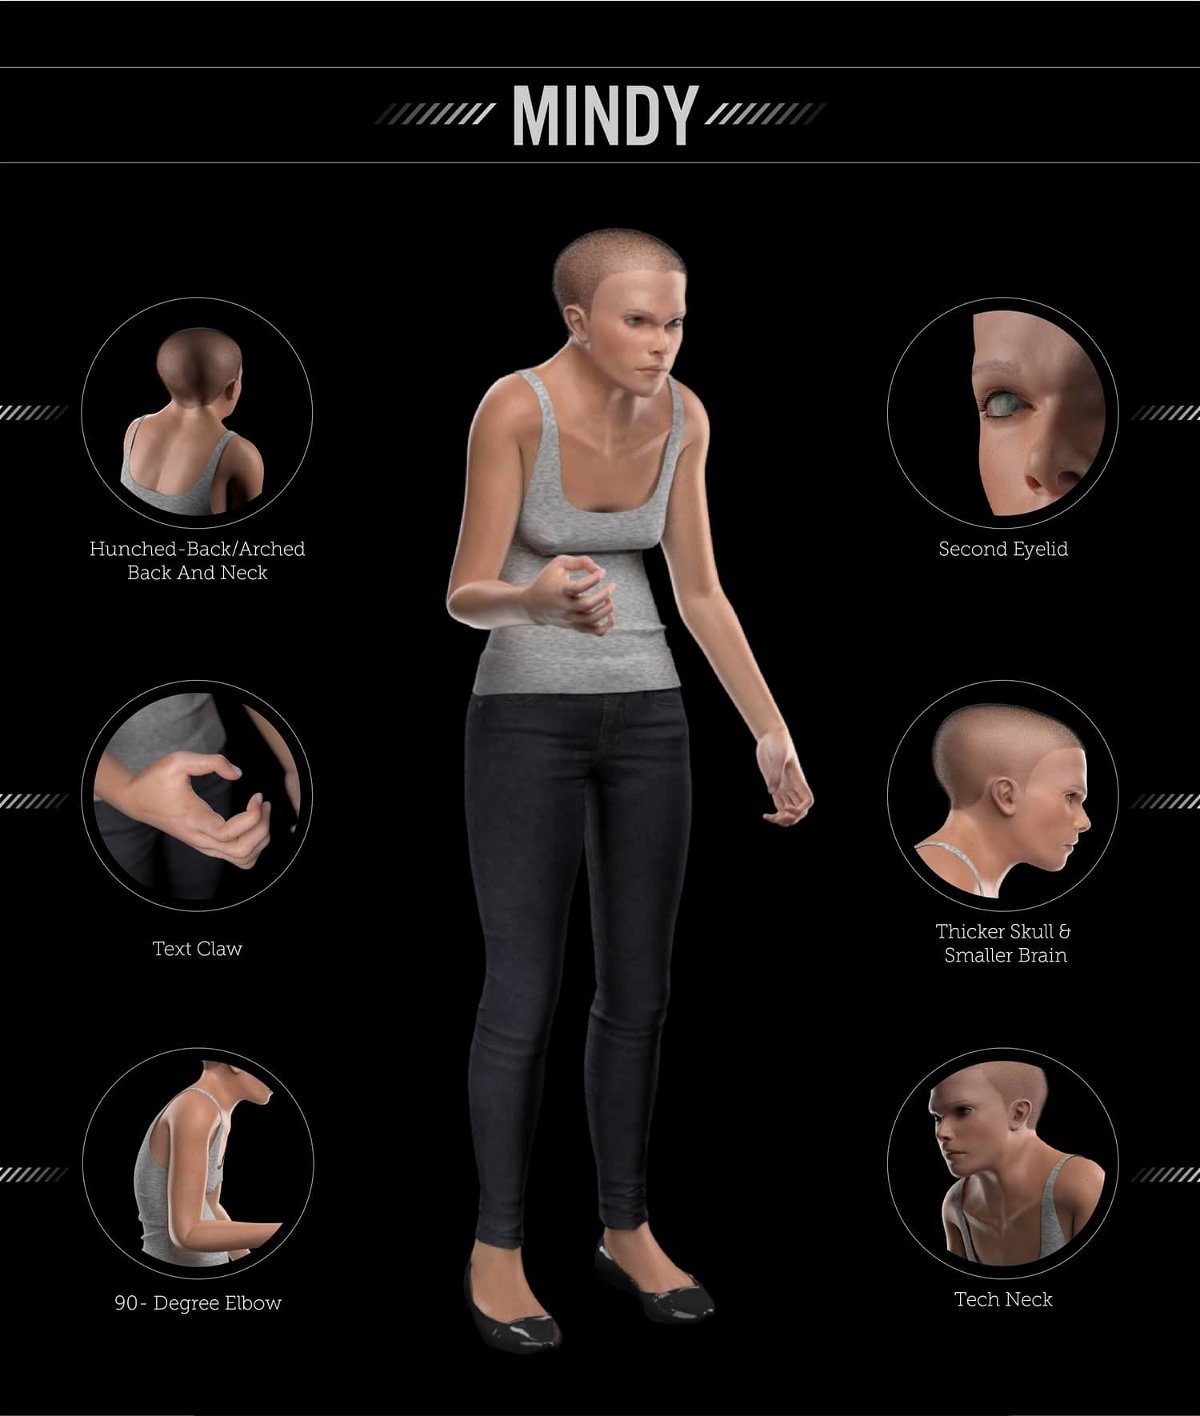 Un'immagine che ritrae i vari possibili cambiamenti del corpo umano dovuti all'uso eccessivo della tecnologia